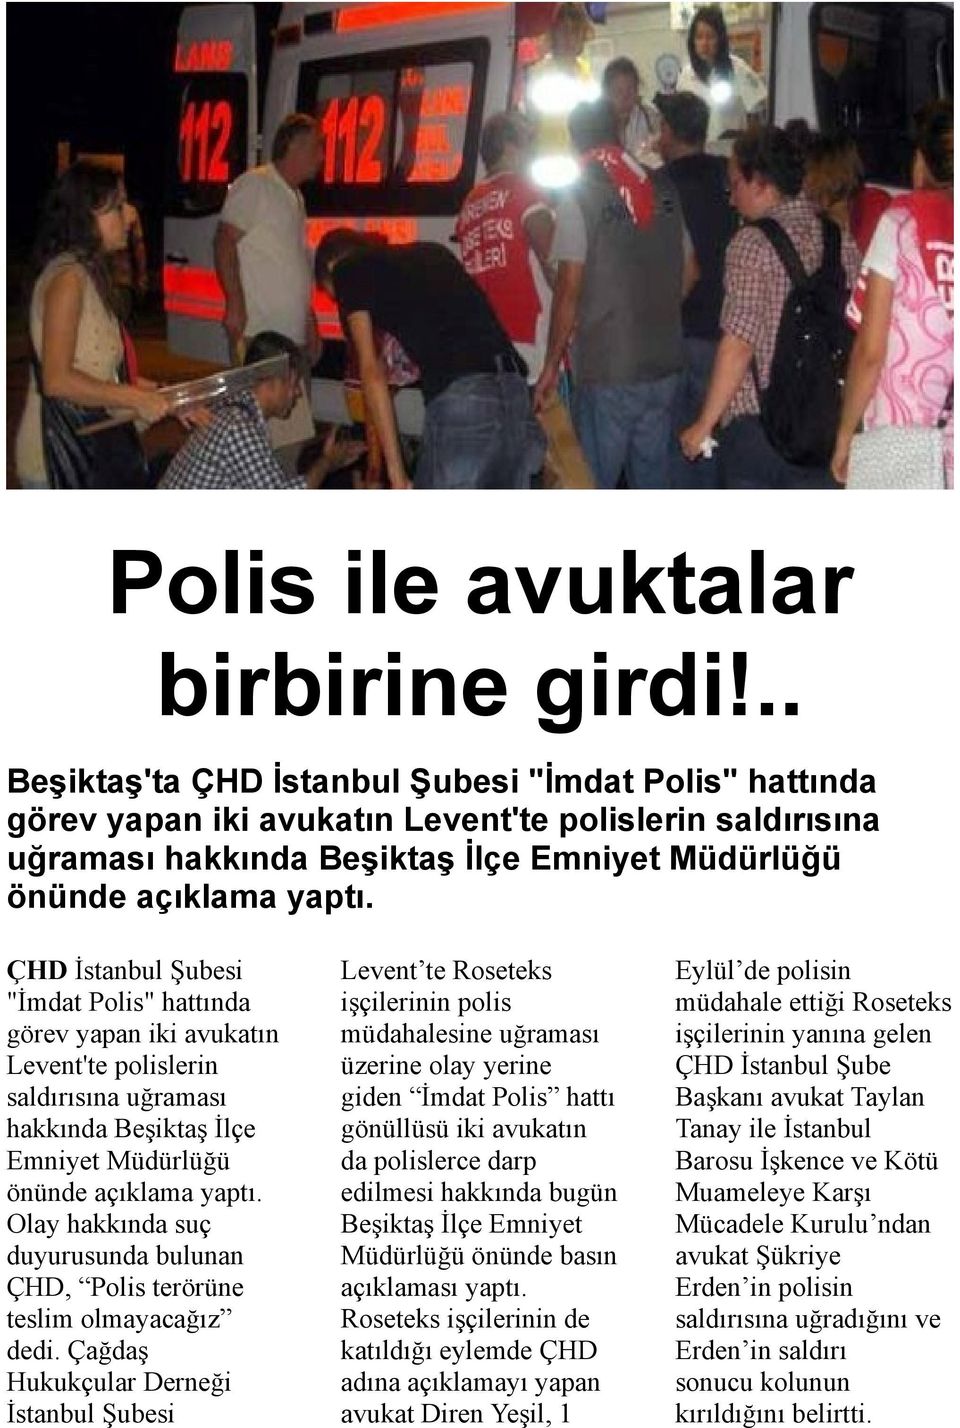 ÇHD İstanbul Şubesi "İmdat Polis" hattında görev yapan iki avukatın Levent'te polislerin saldırısına uğraması hakkında Beşiktaş İlçe Emniyet Müdürlüğü önünde açıklama yaptı.